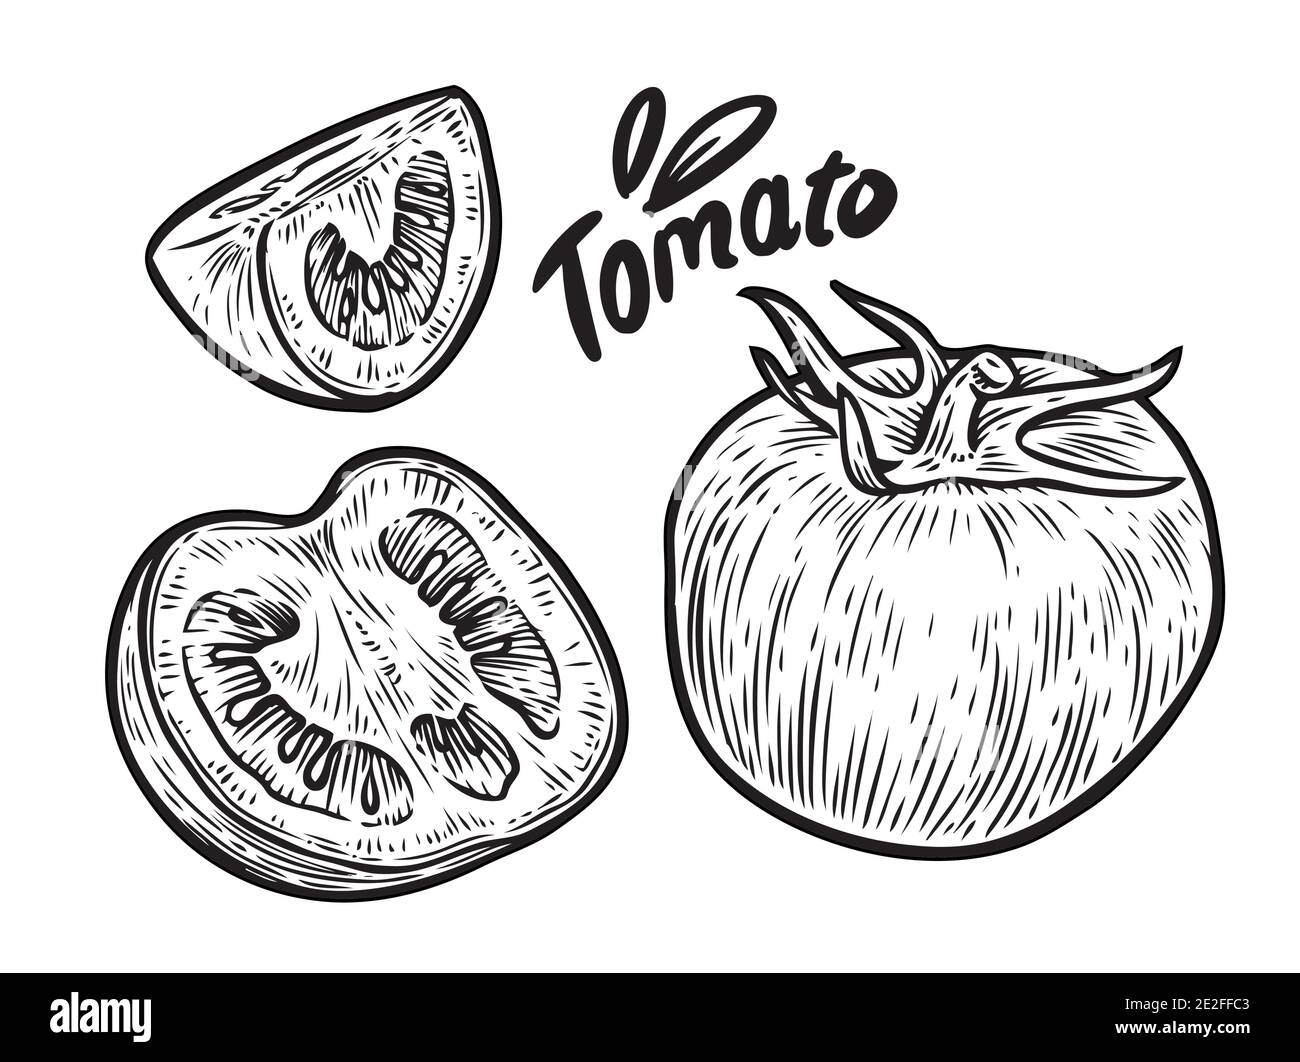 Tomate und in Scheiben schneiden. Vektorgrafik Gemüse Skizze Stock Vektor